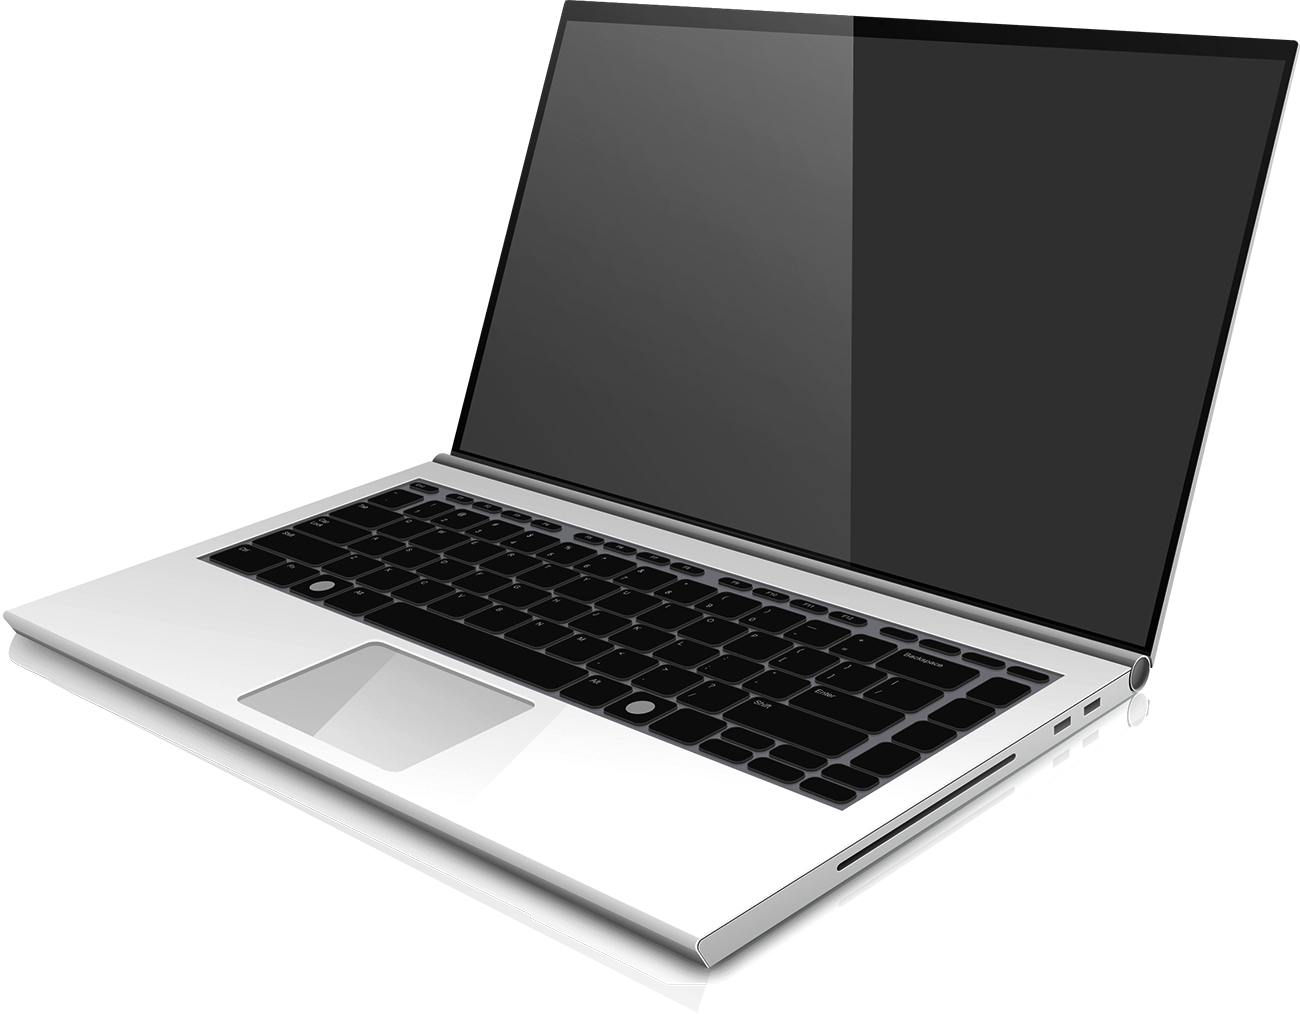 Ноутбук на прозрачном фоне фото и картинки Abrakadabrafun